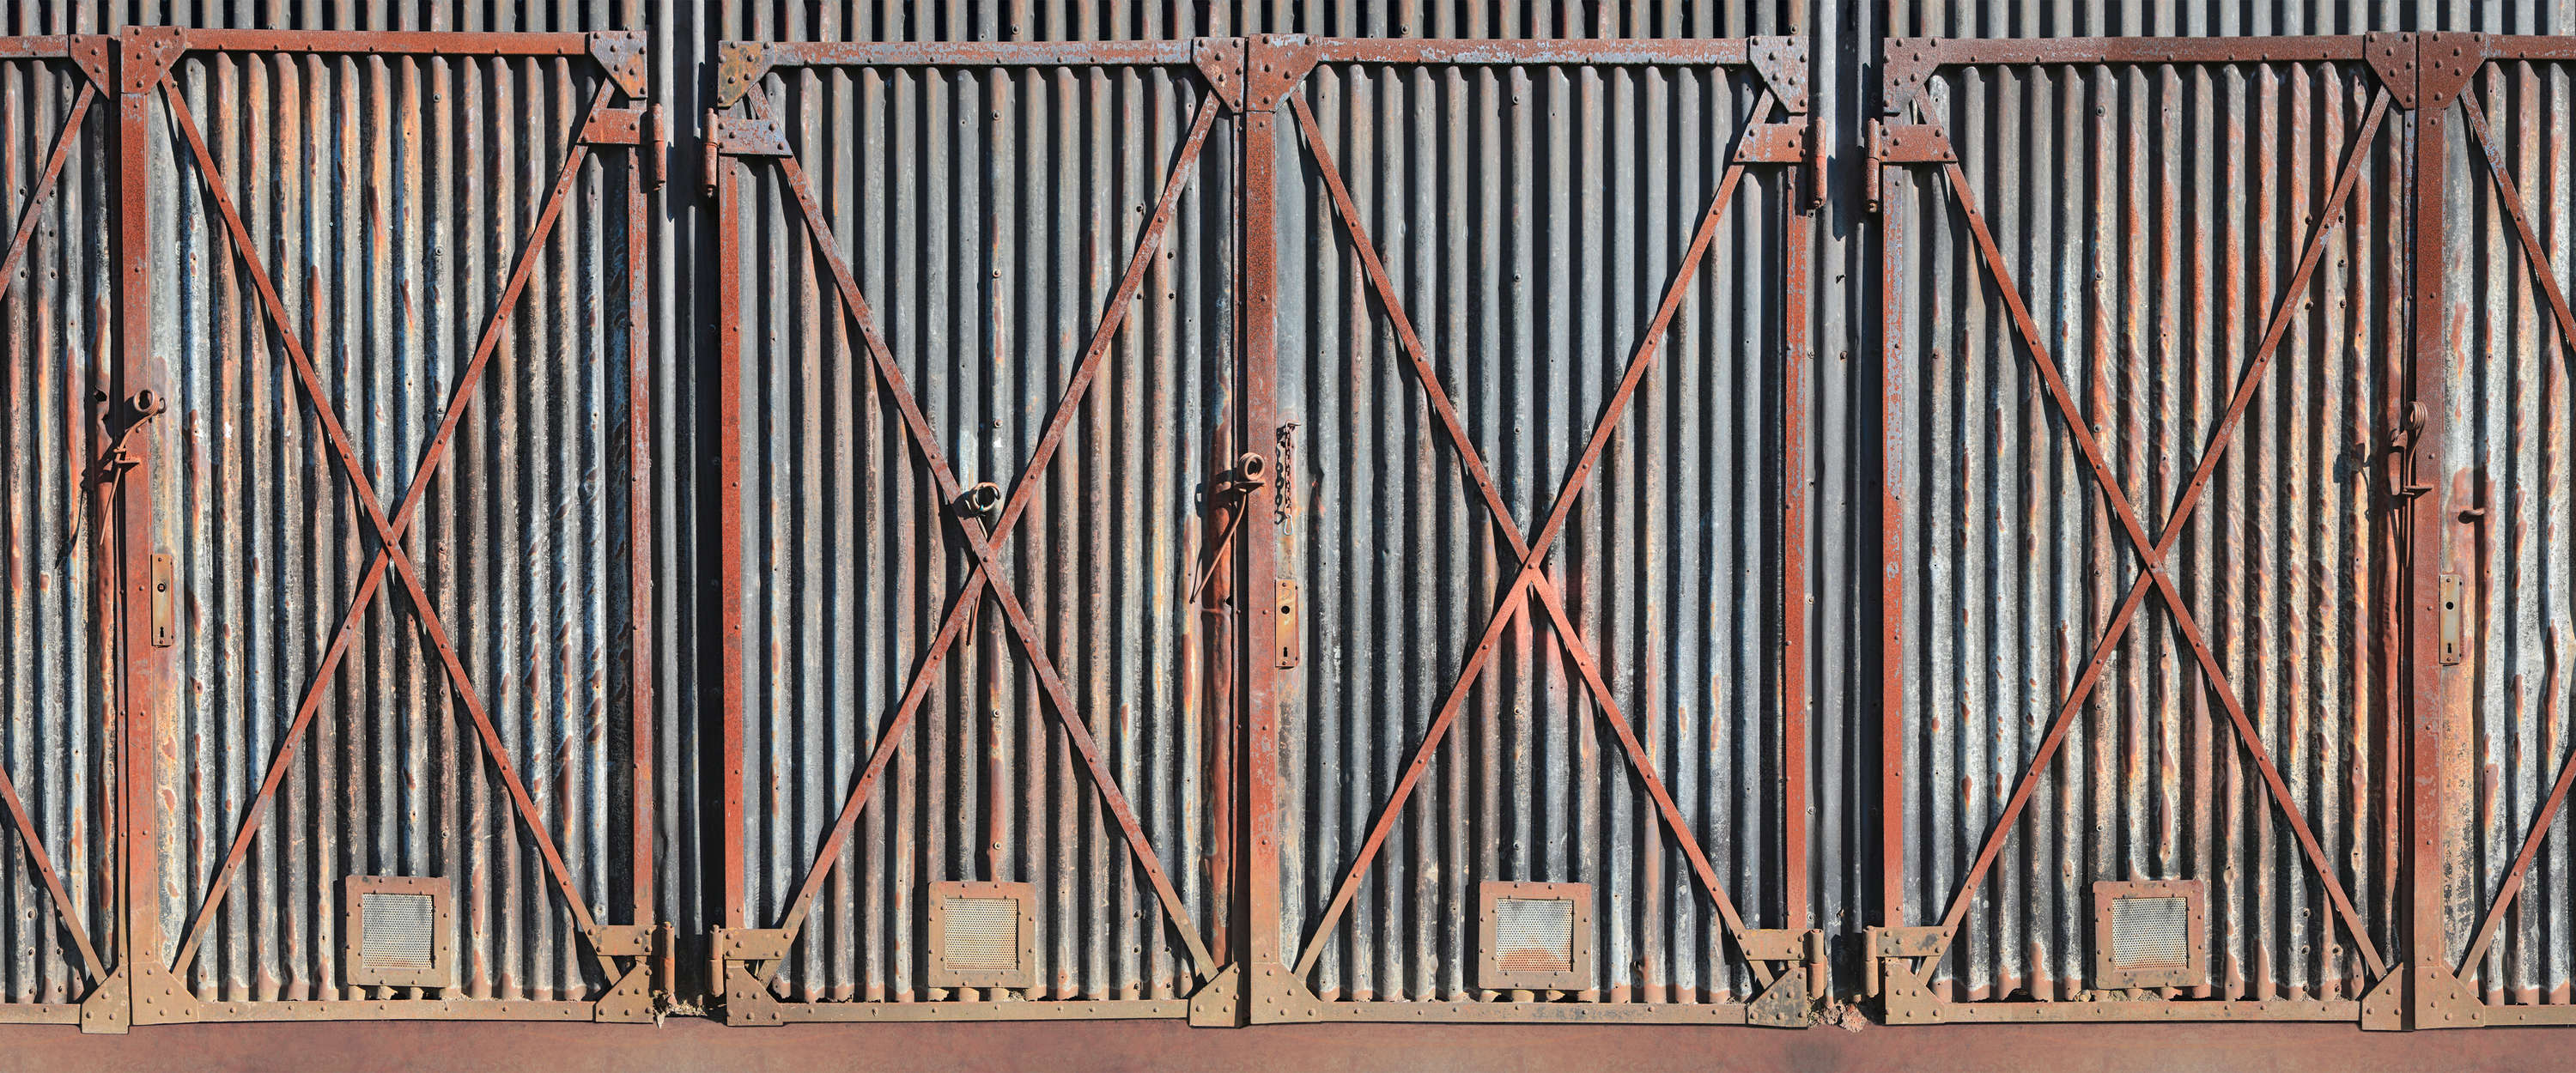             Mural de pared puerta de acero oxidado en estilo industrial
        